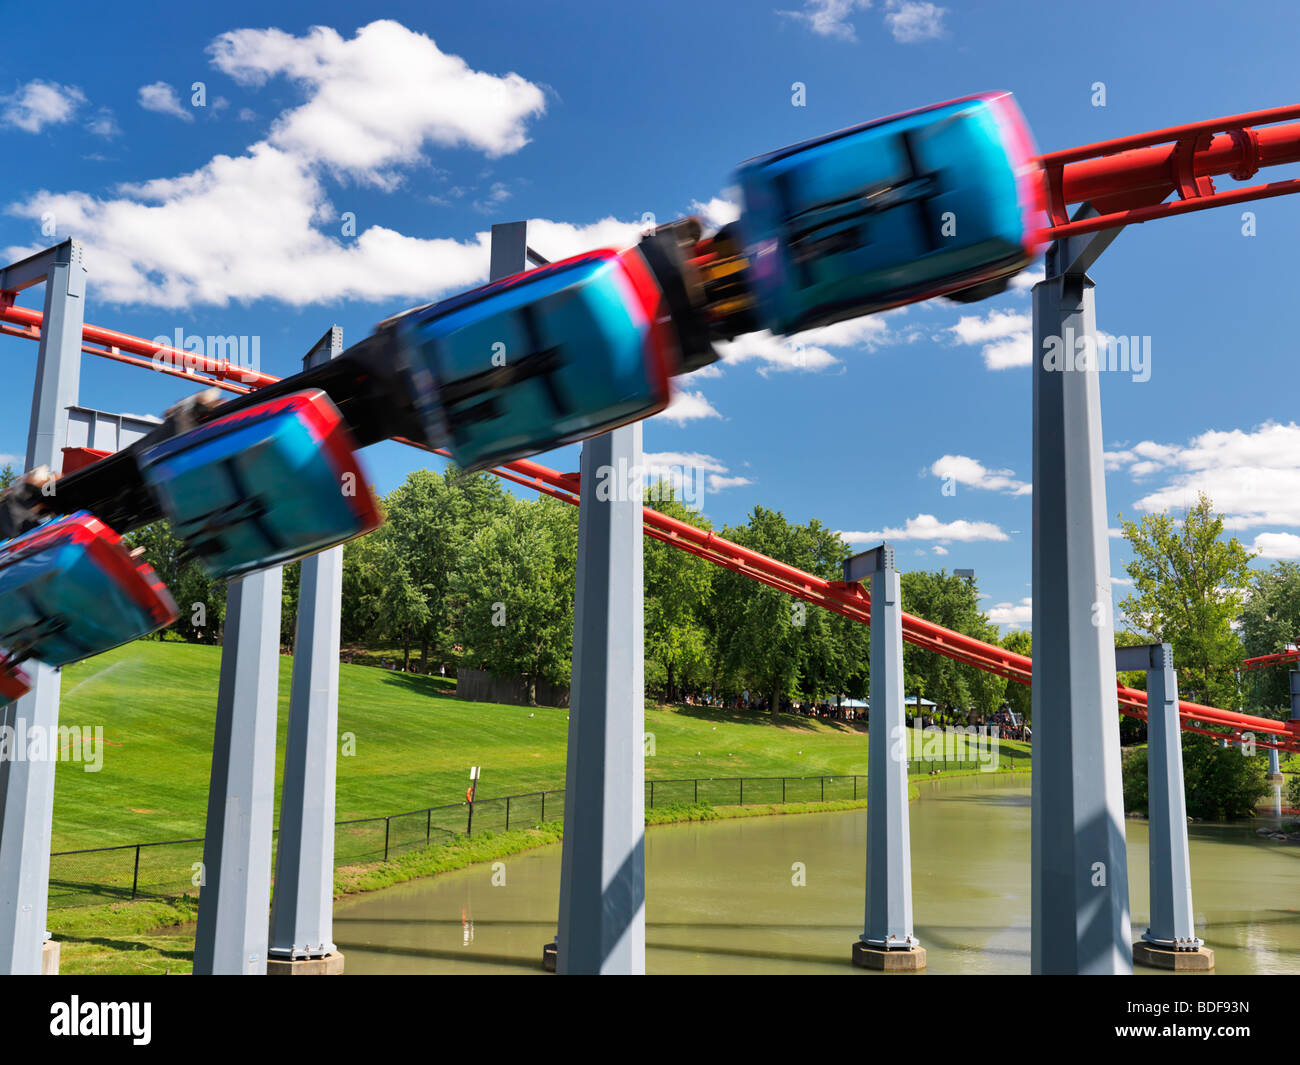 Vortex sospeso roller coaster al Canada's Wonderland Amusement Park. Foto Stock